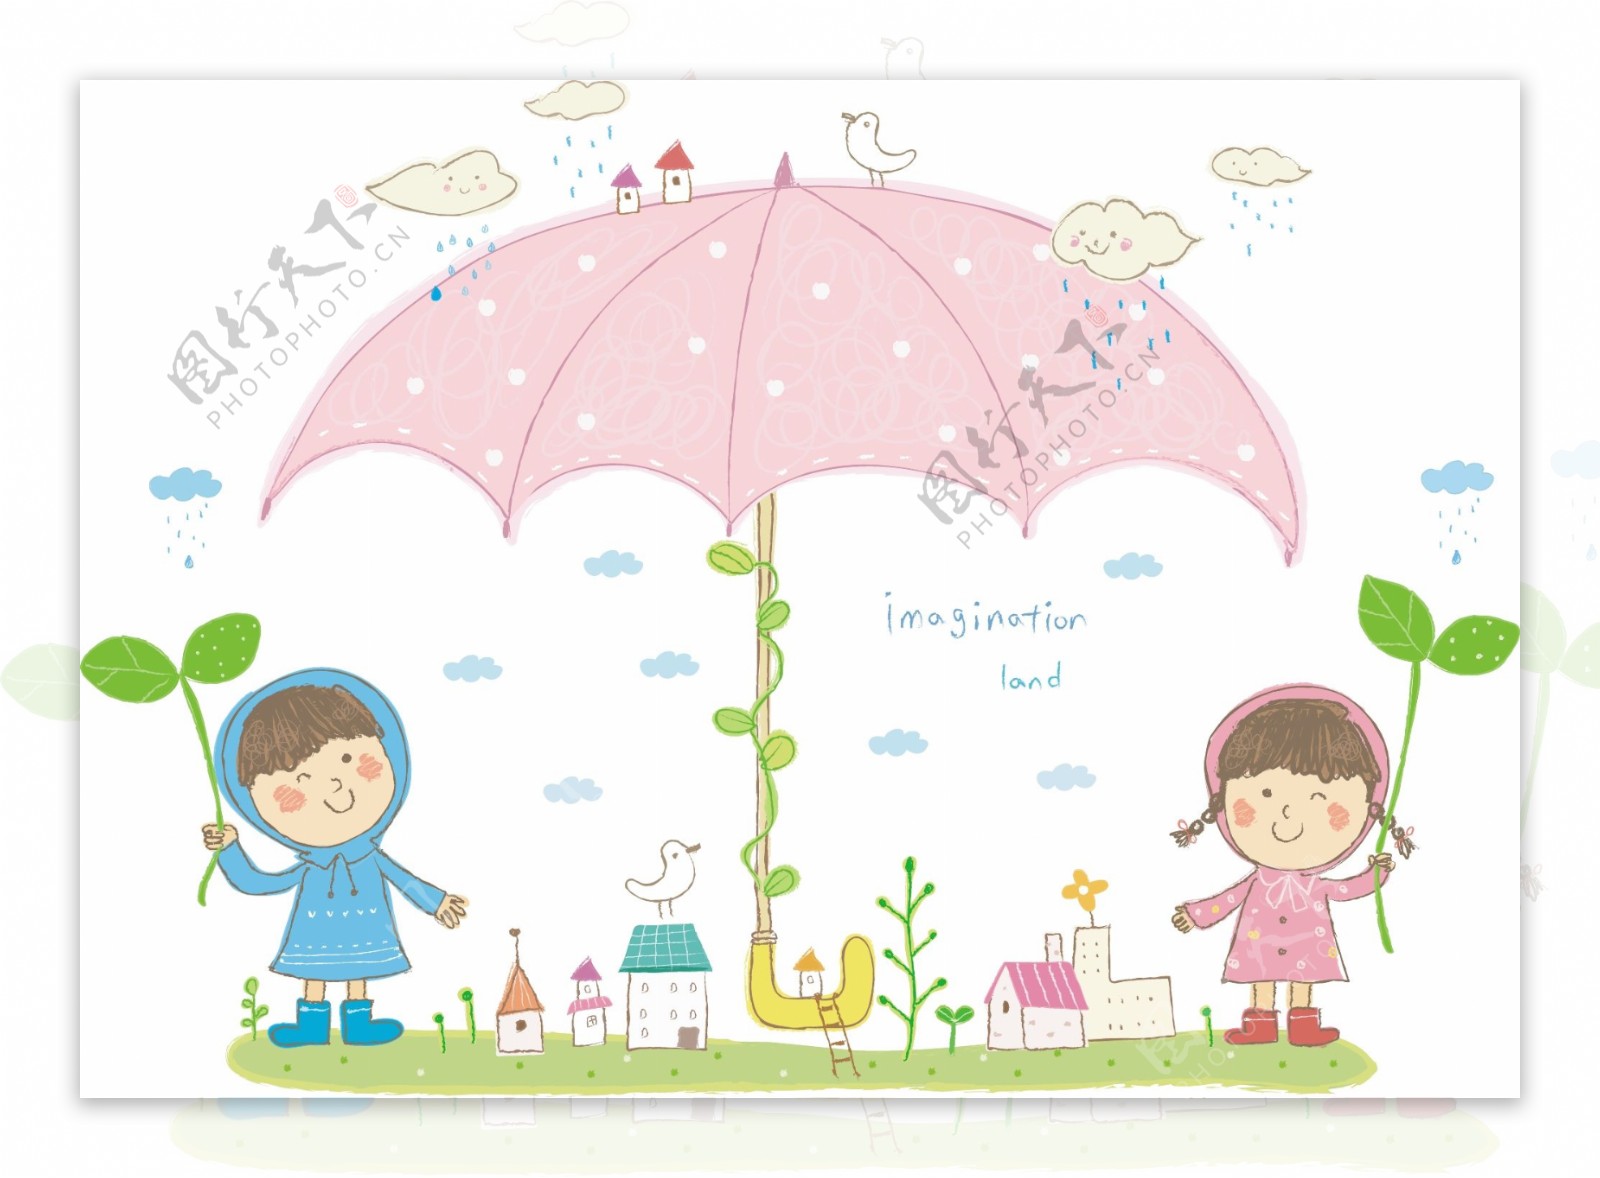 儿童雨伞图片